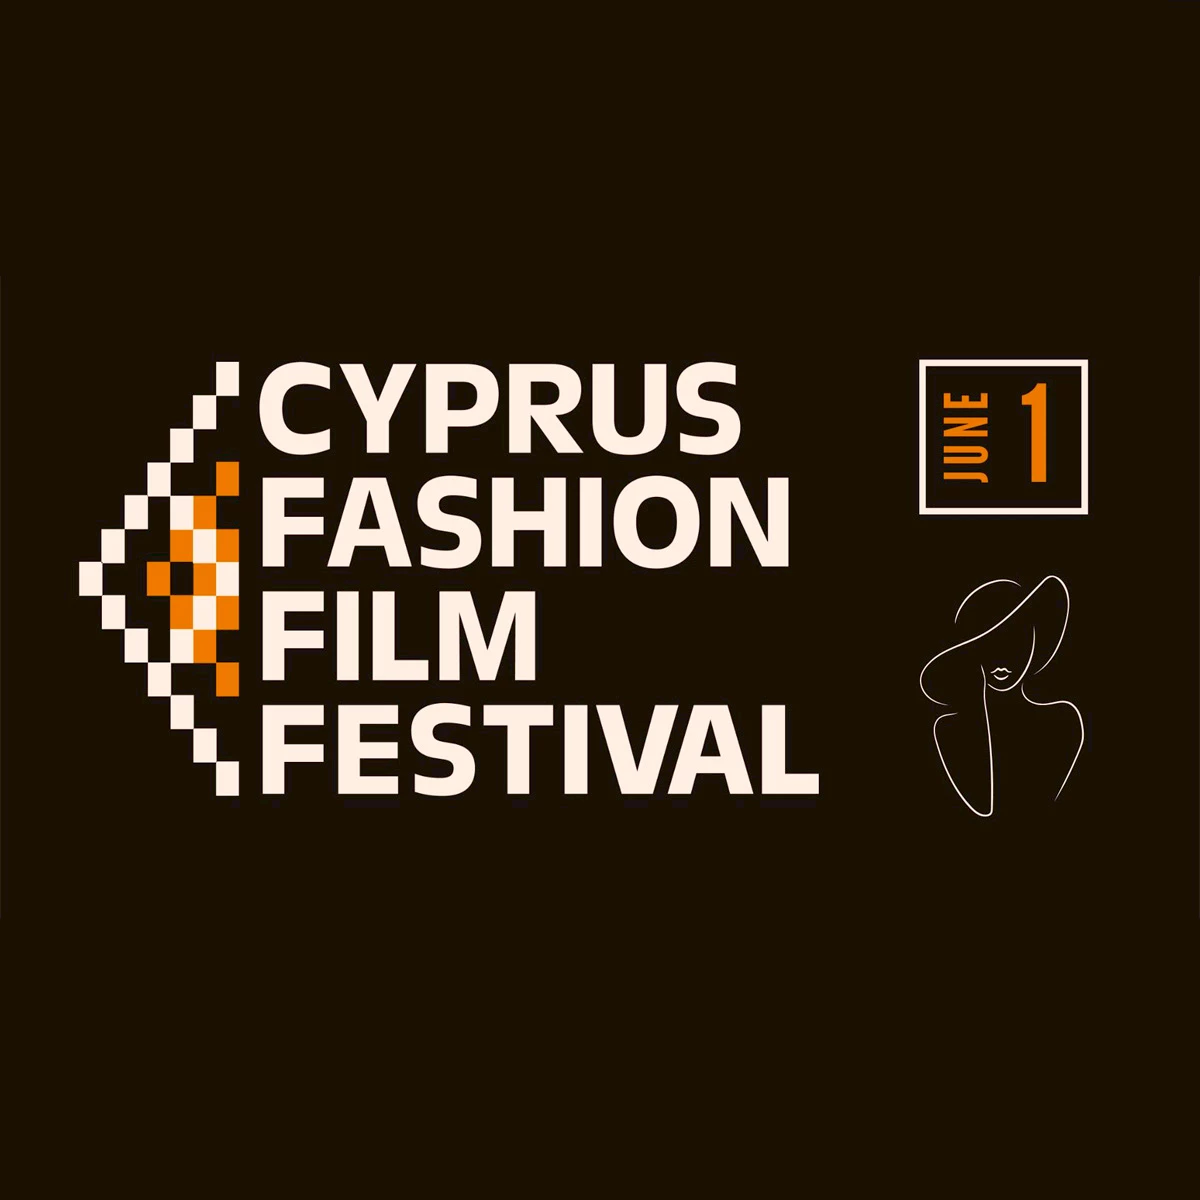 Fashion Film Festival